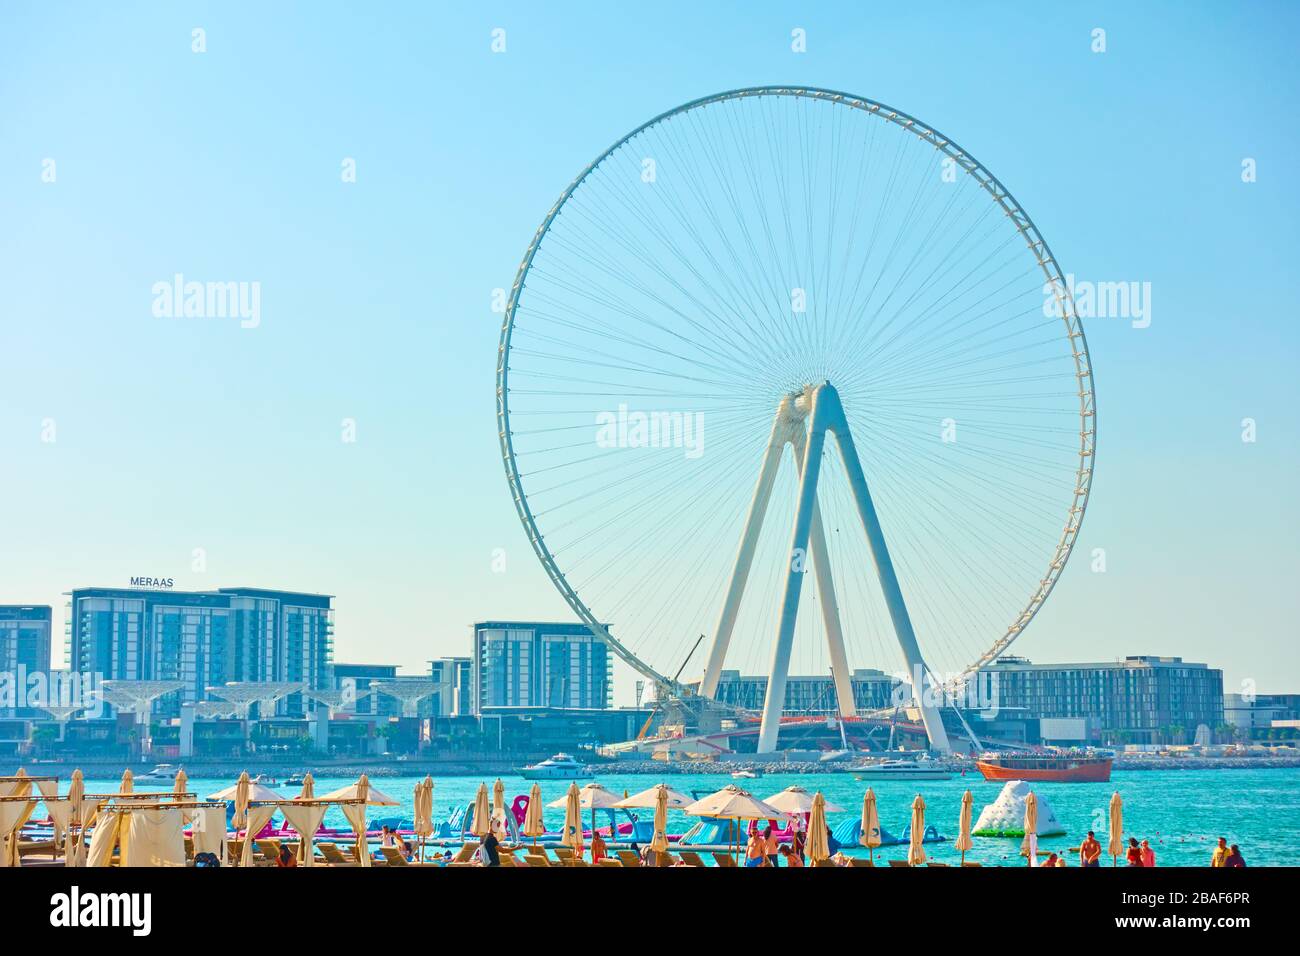 Dubaï, Émirats arabes Unis - 30 janvier 2020: Construction de l'Ain Dubaï - la plus grande roue d'observation des Émirats arabes Unis Banque D'Images